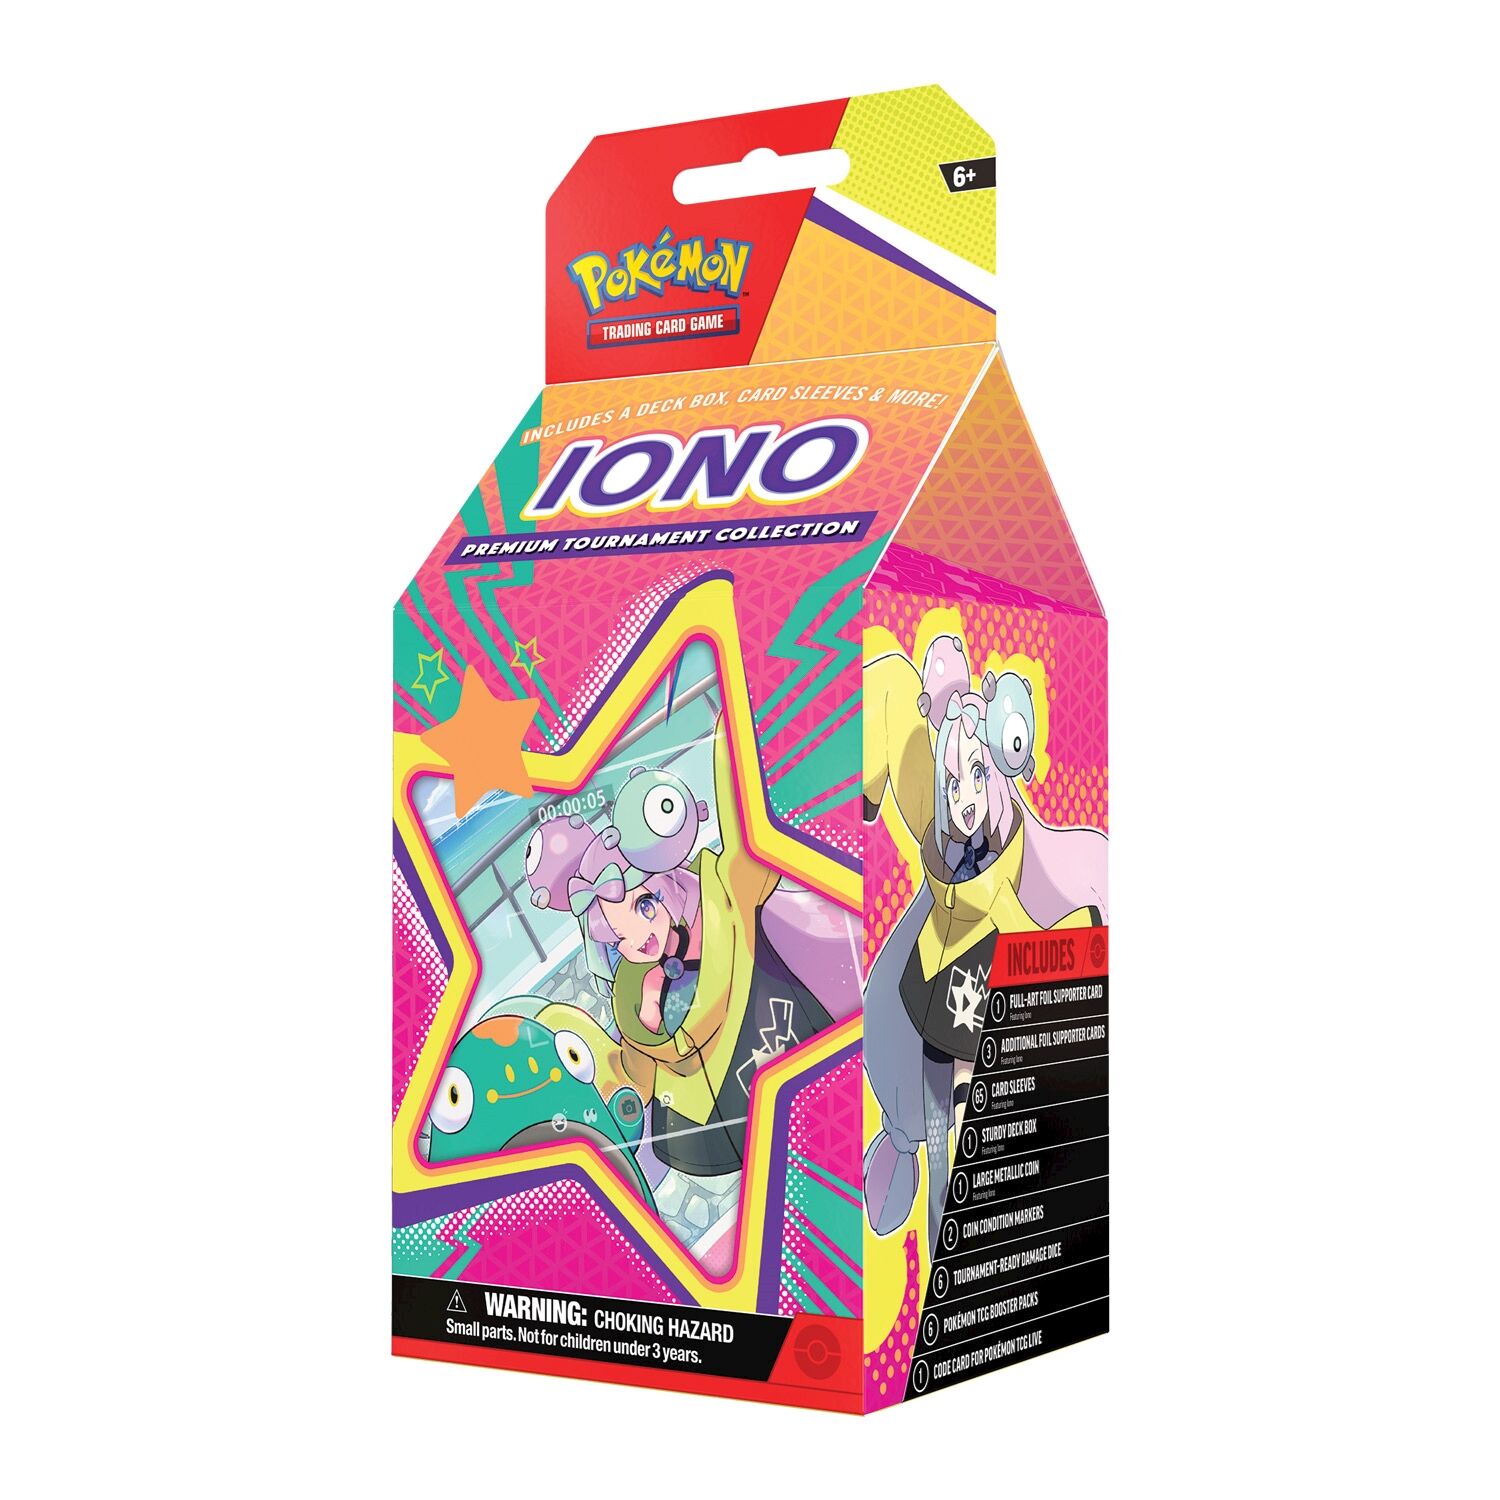 Pokémon Iono Premium Tournament Collection Box - EN